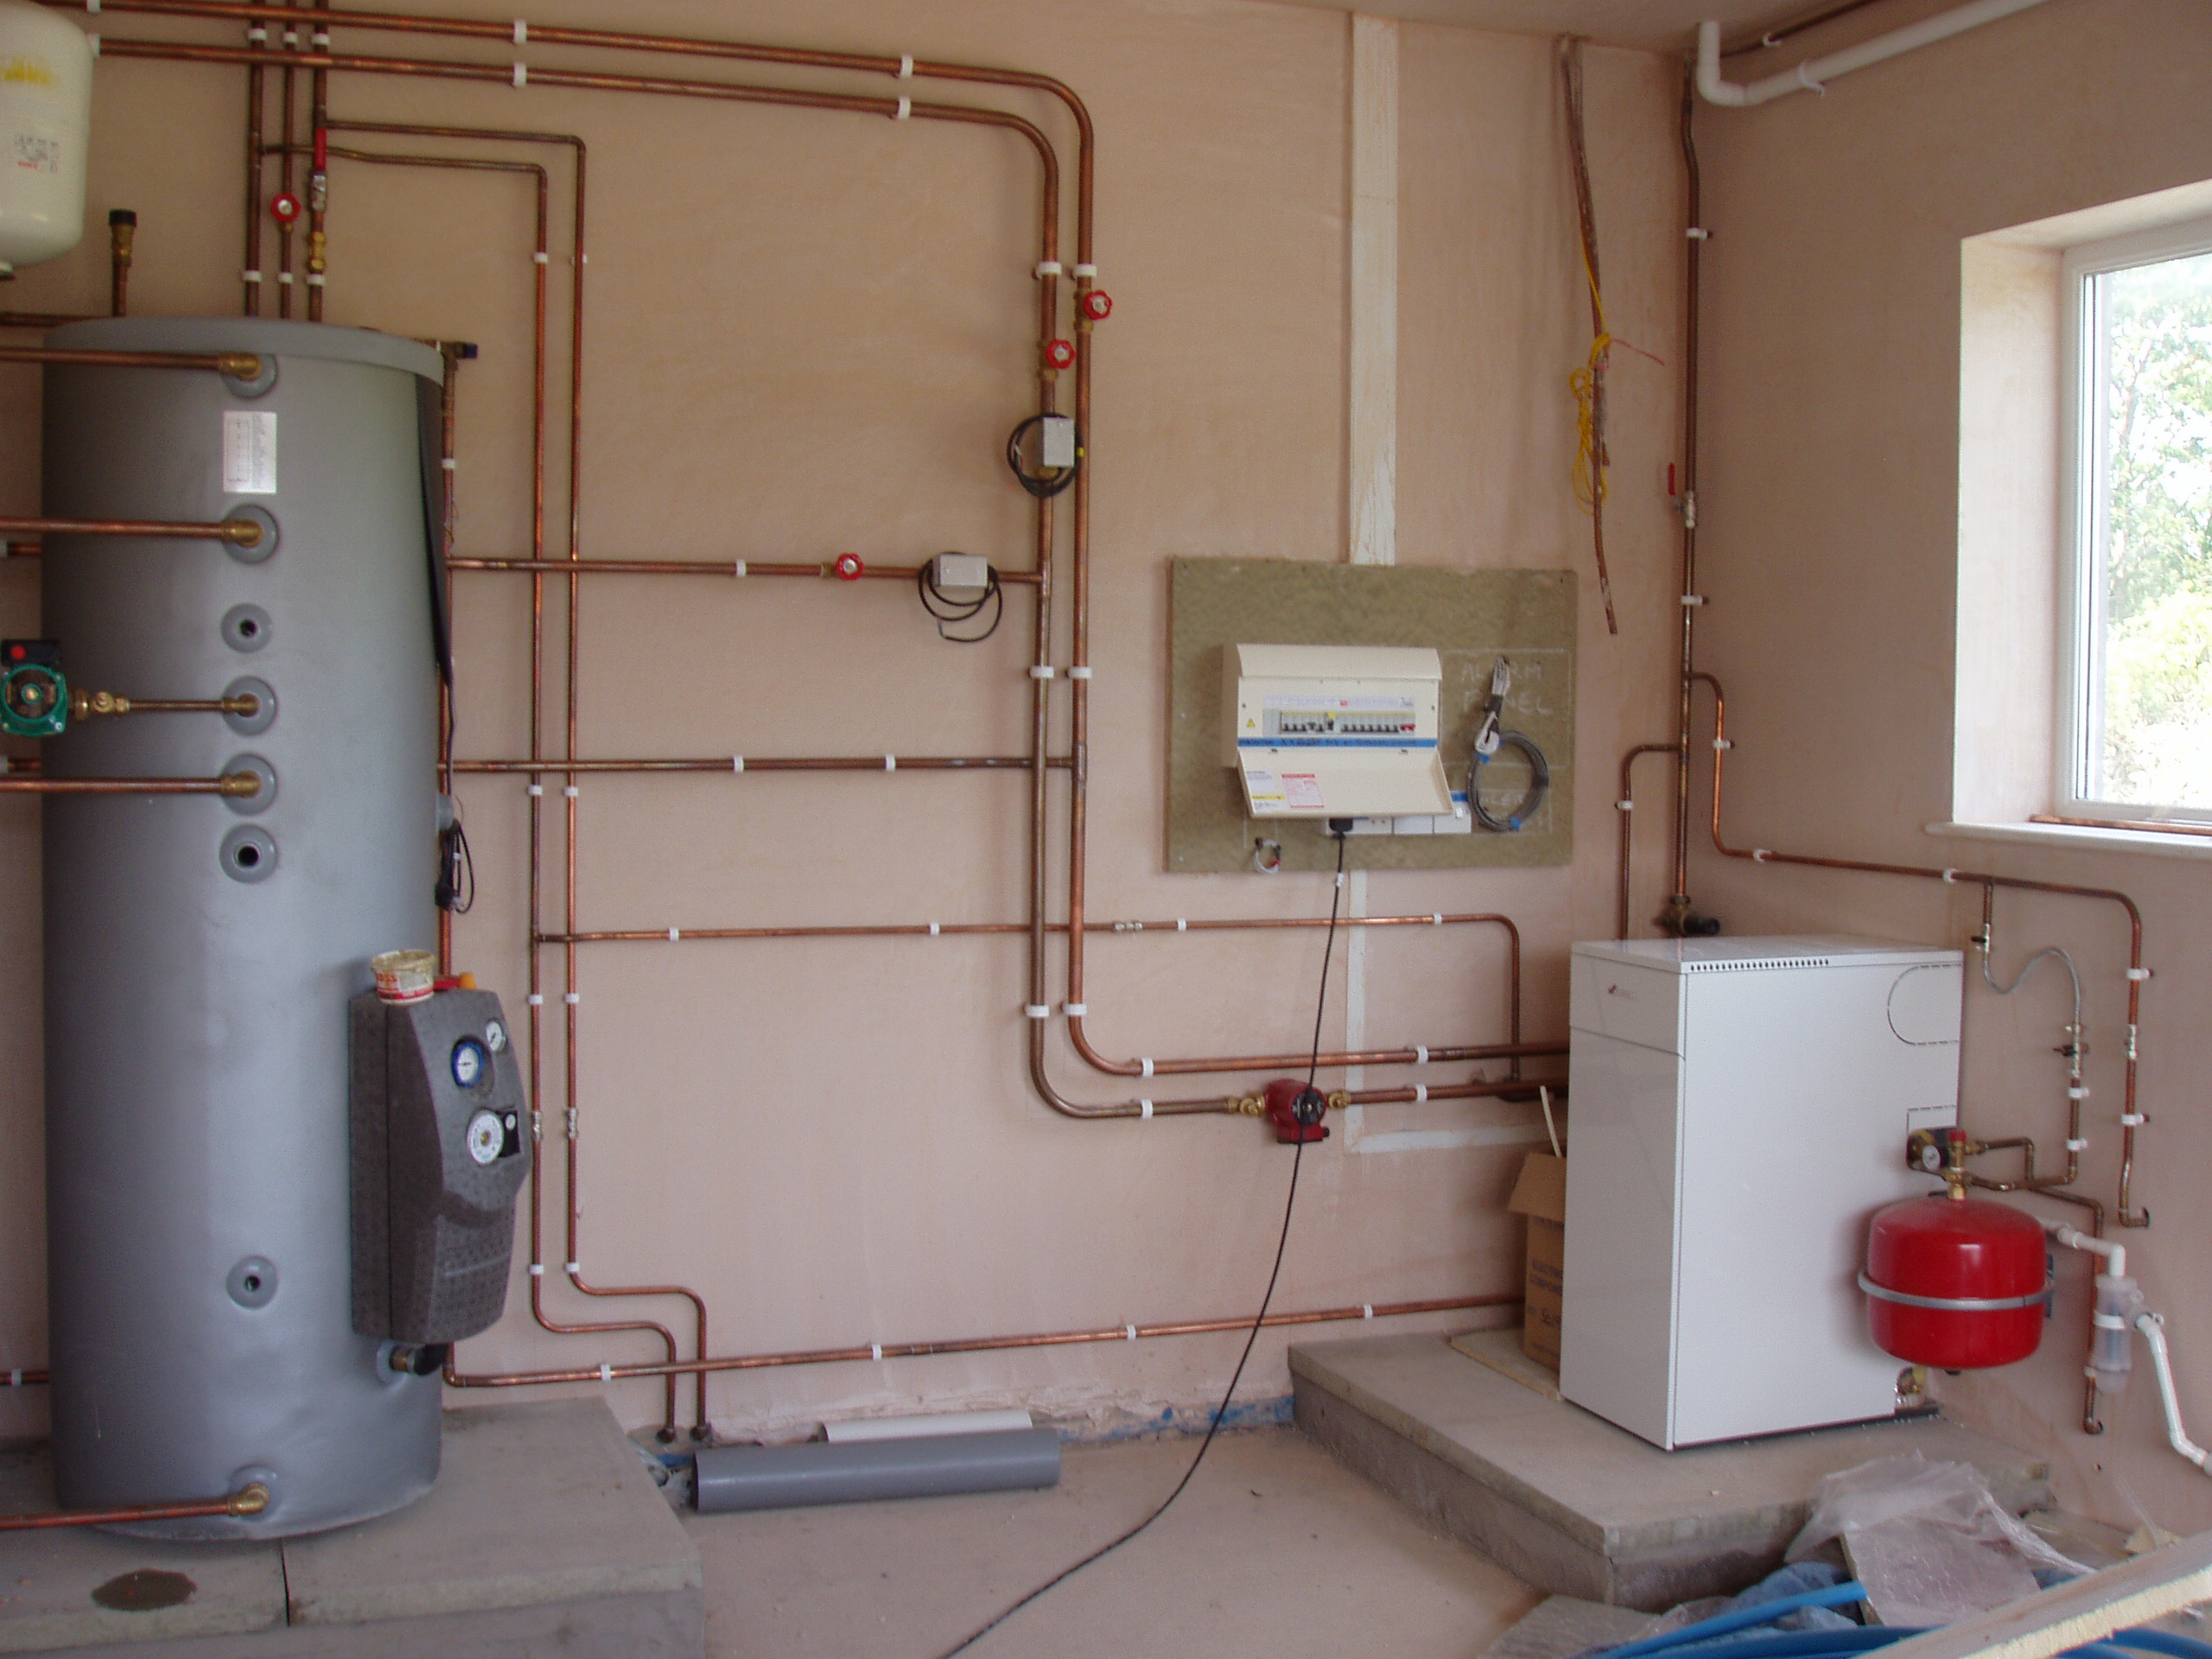 Закрытая система отопления | Тепло Сервис - системы отопления в каждый дом.